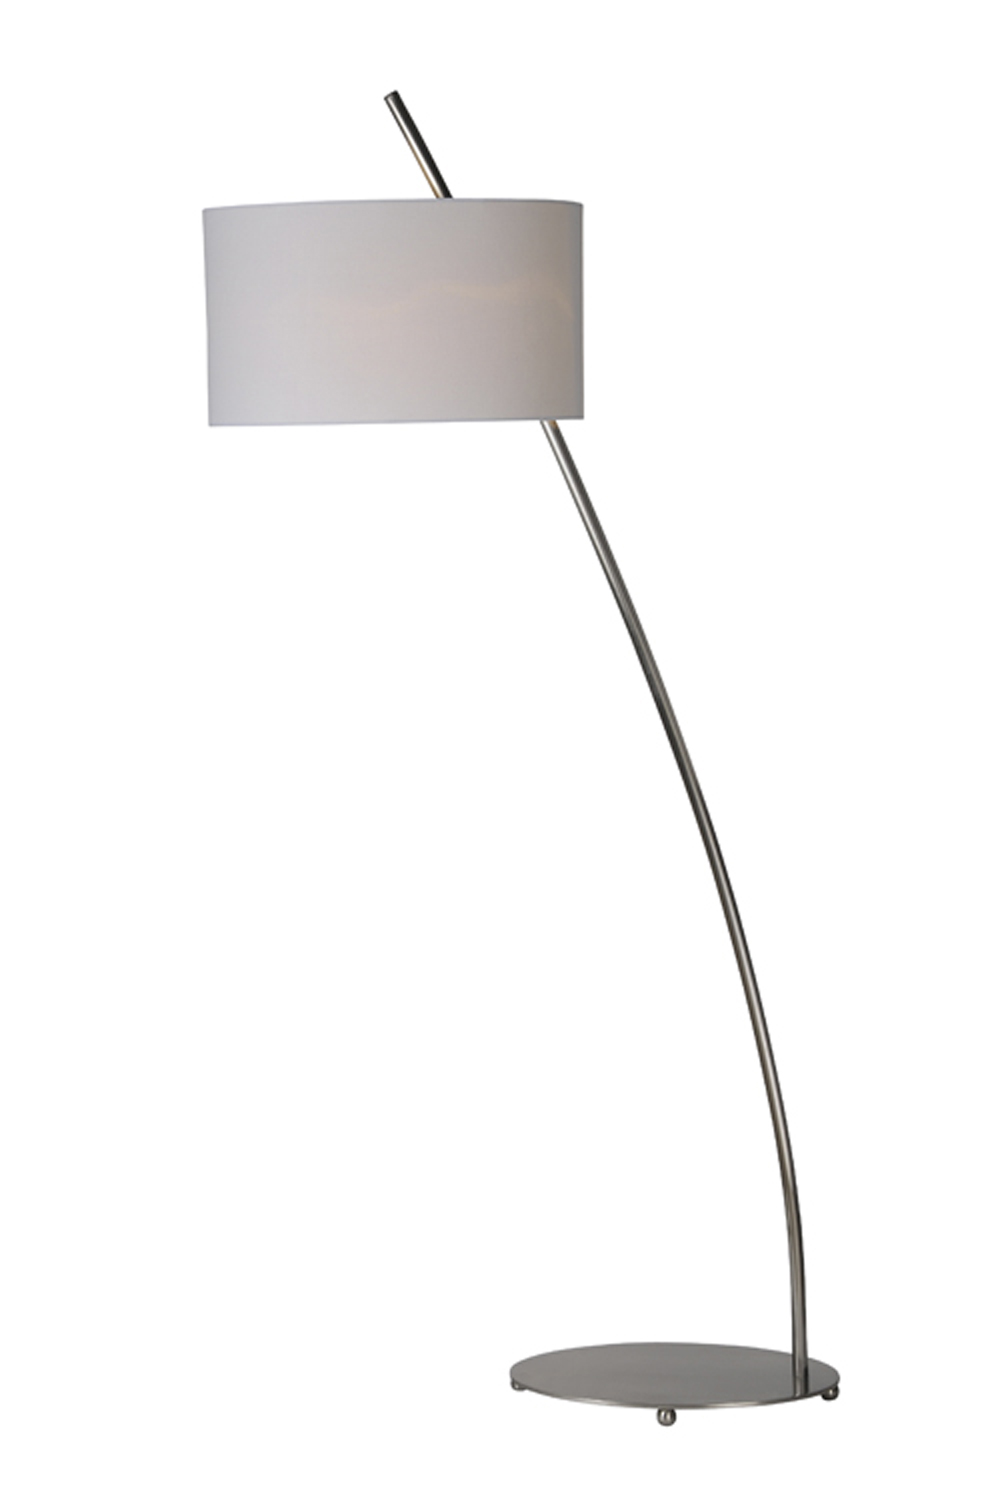 Ren-Wil Valencia Floor Lamp